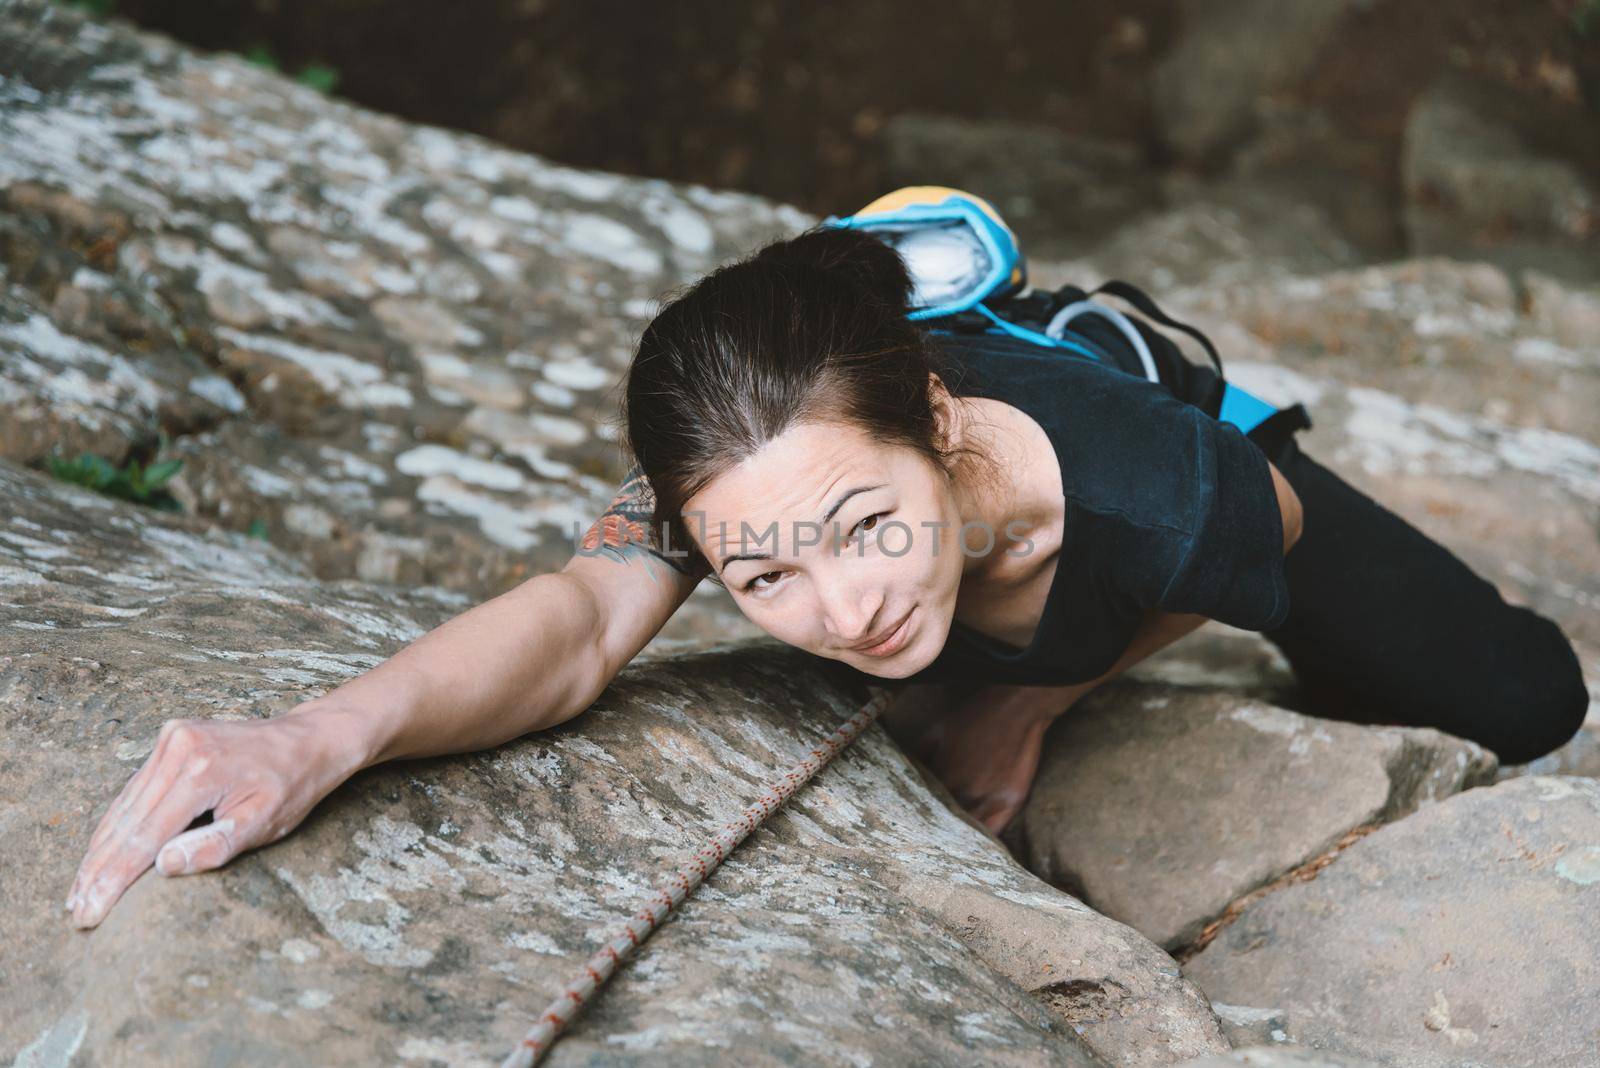 Young woman climbing outdoor by alexAleksei